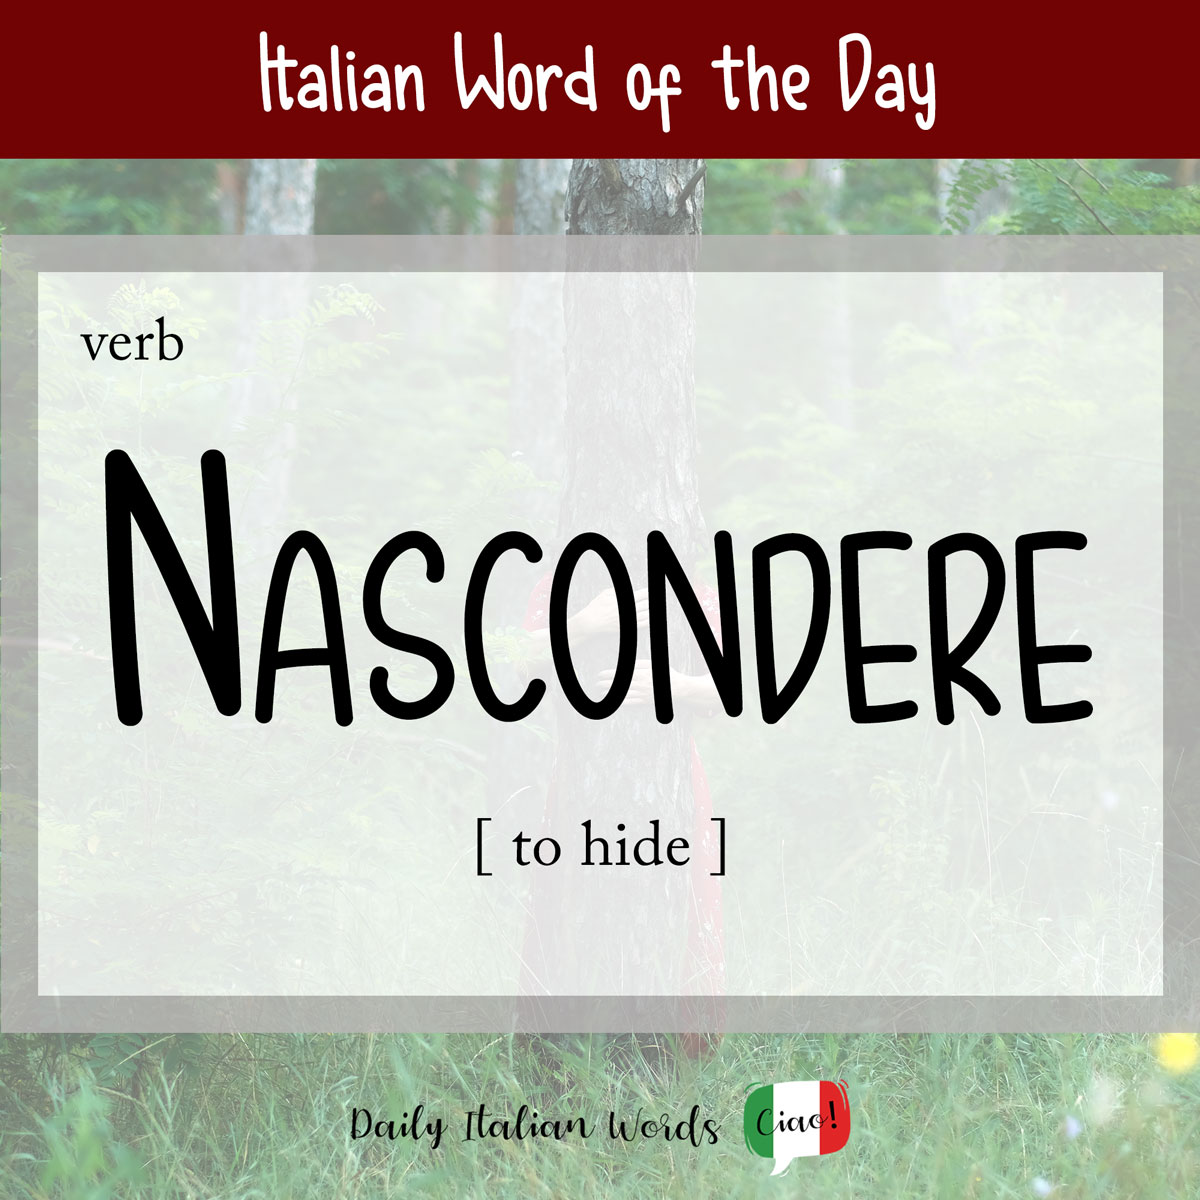 Italian word of the day: Nascondere (hidden/hidden)